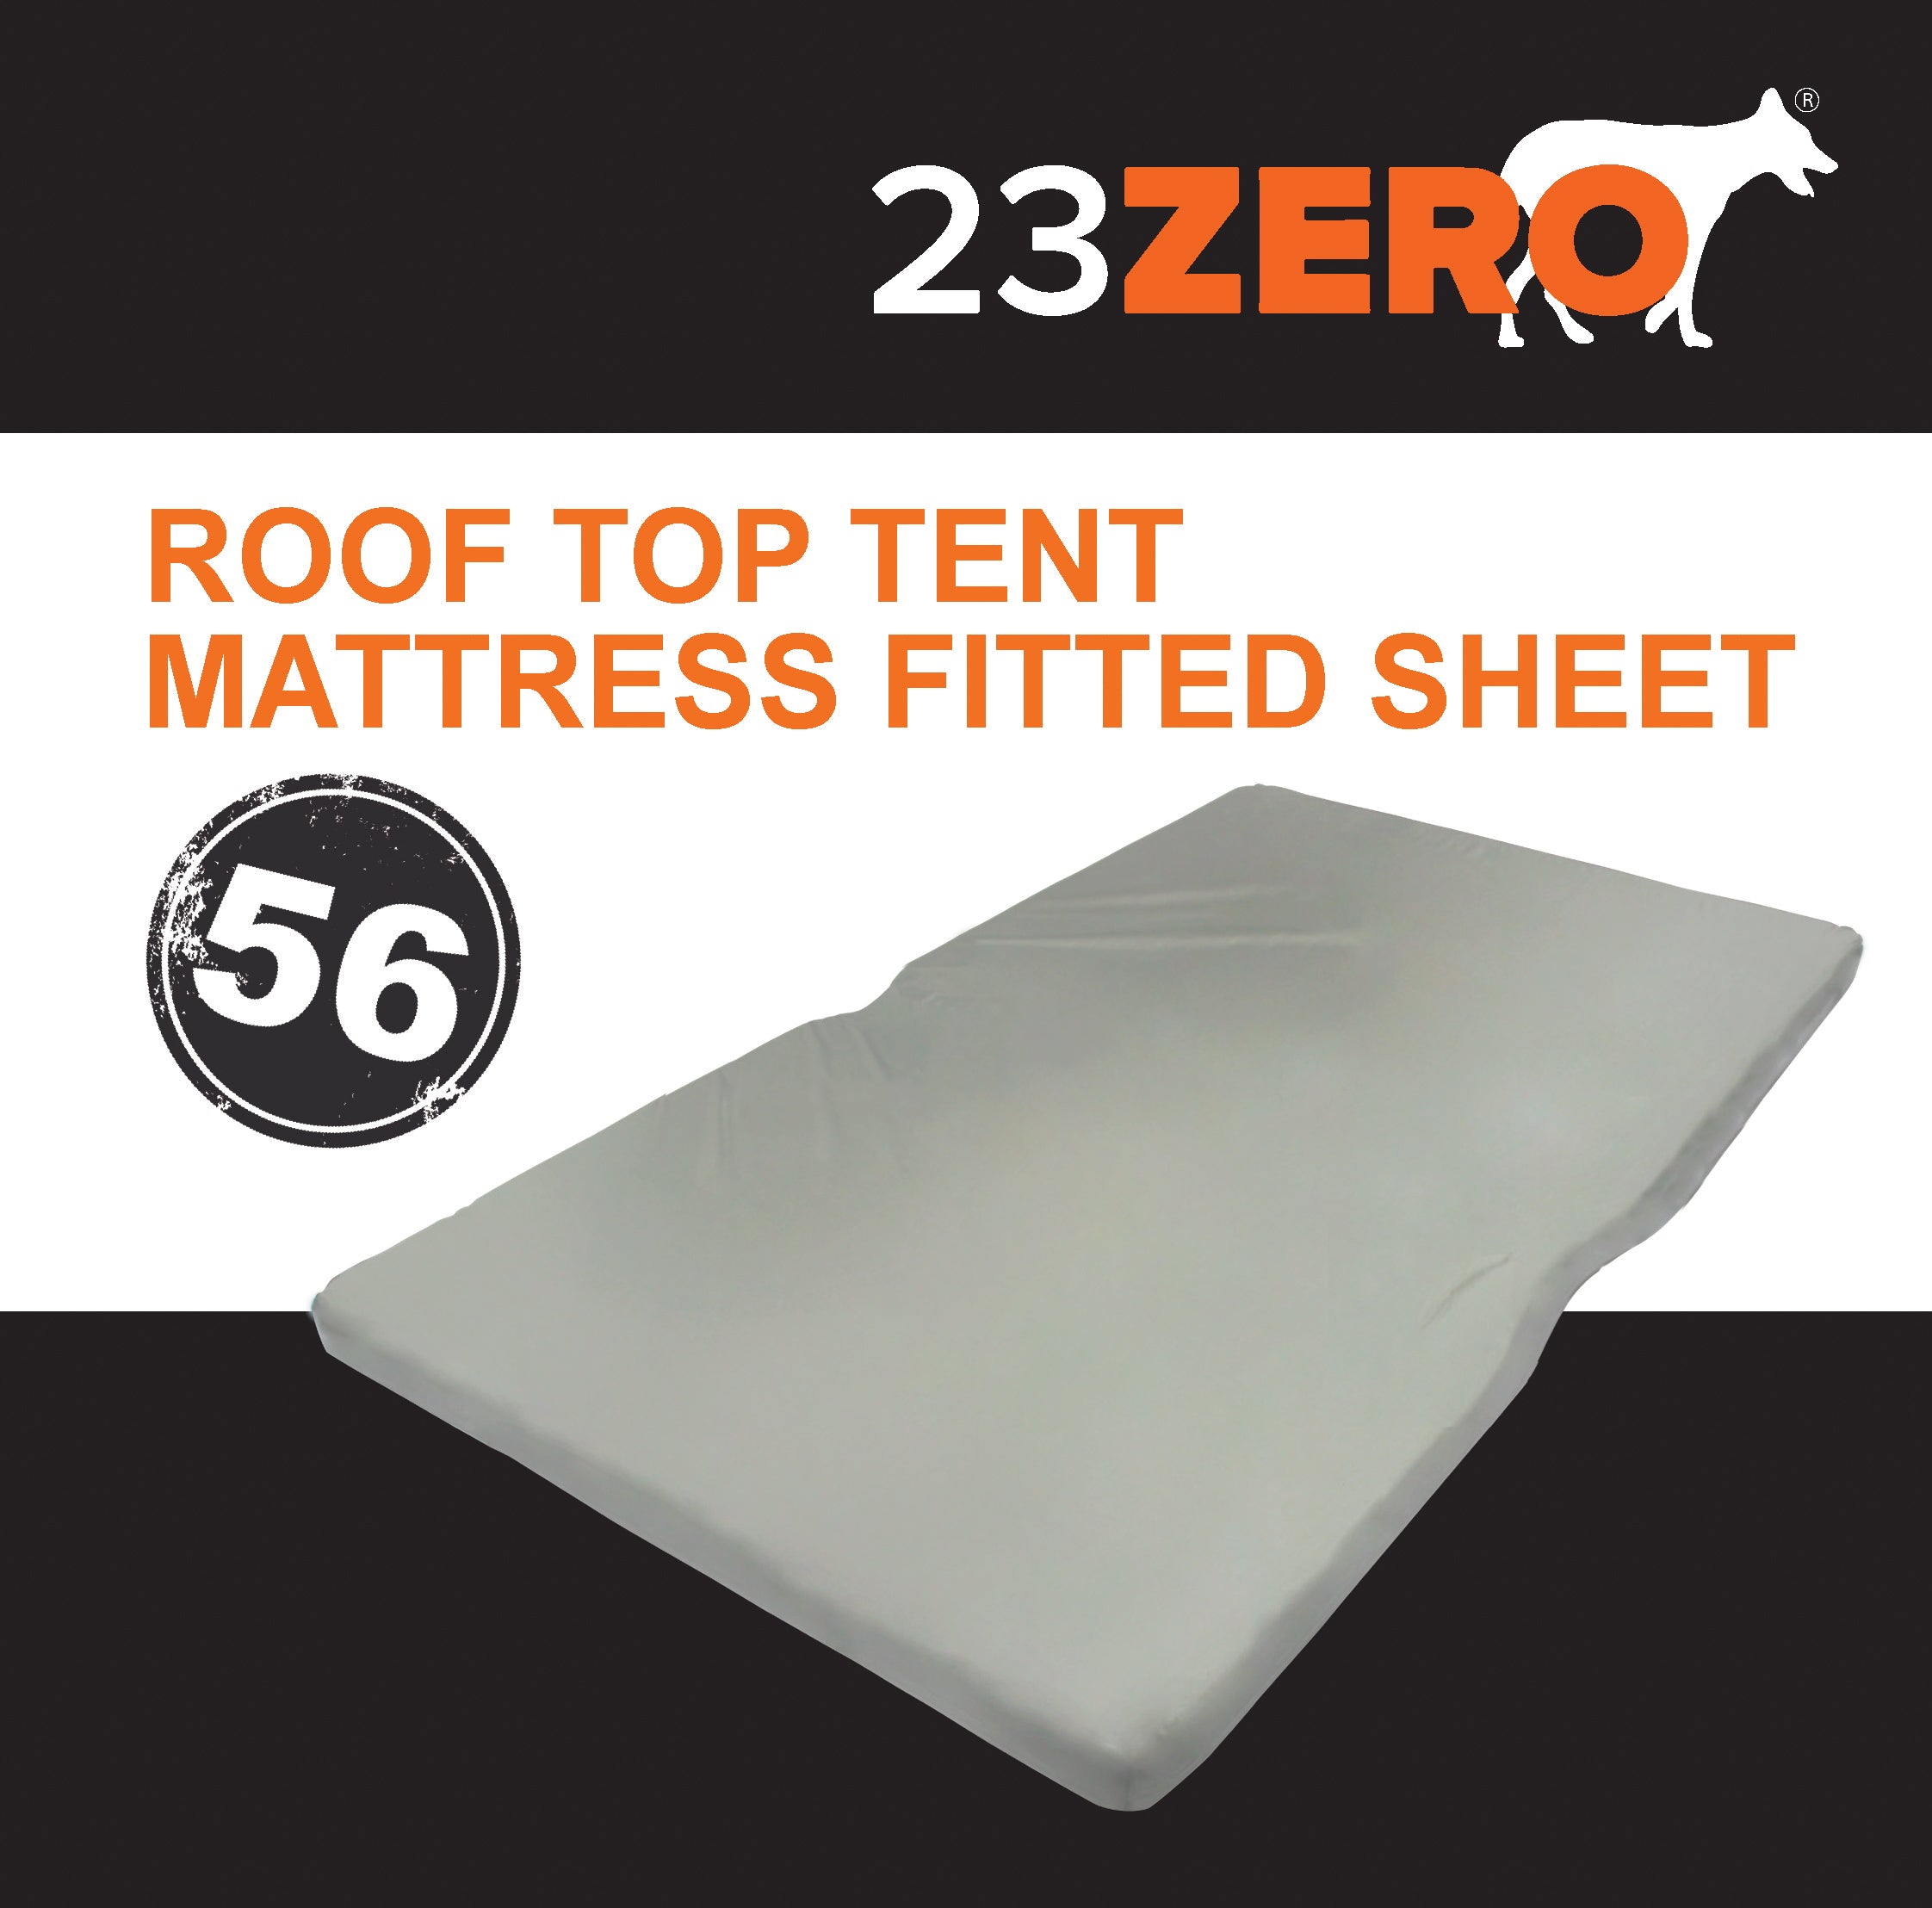 23zero Roof Top Tent Mattress Fitted Sheet 56"